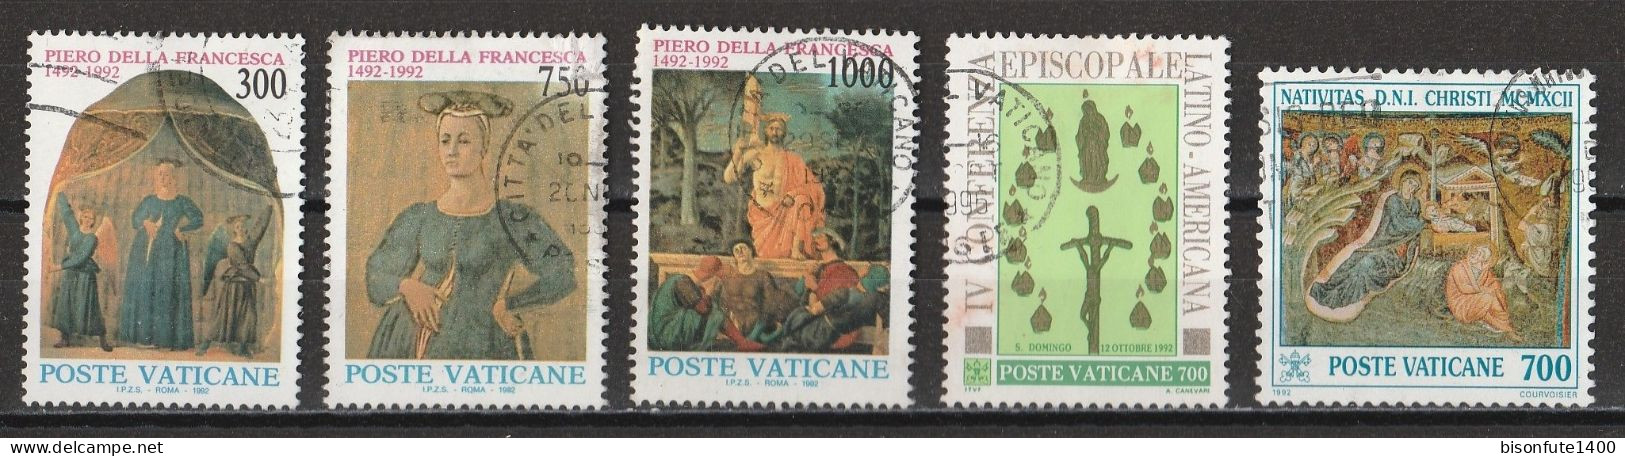 Vatican 1992 : Timbres Yvert & Tellier N° 926 - 927 - 928 - 936 Et 938 Oblitérés. - Oblitérés